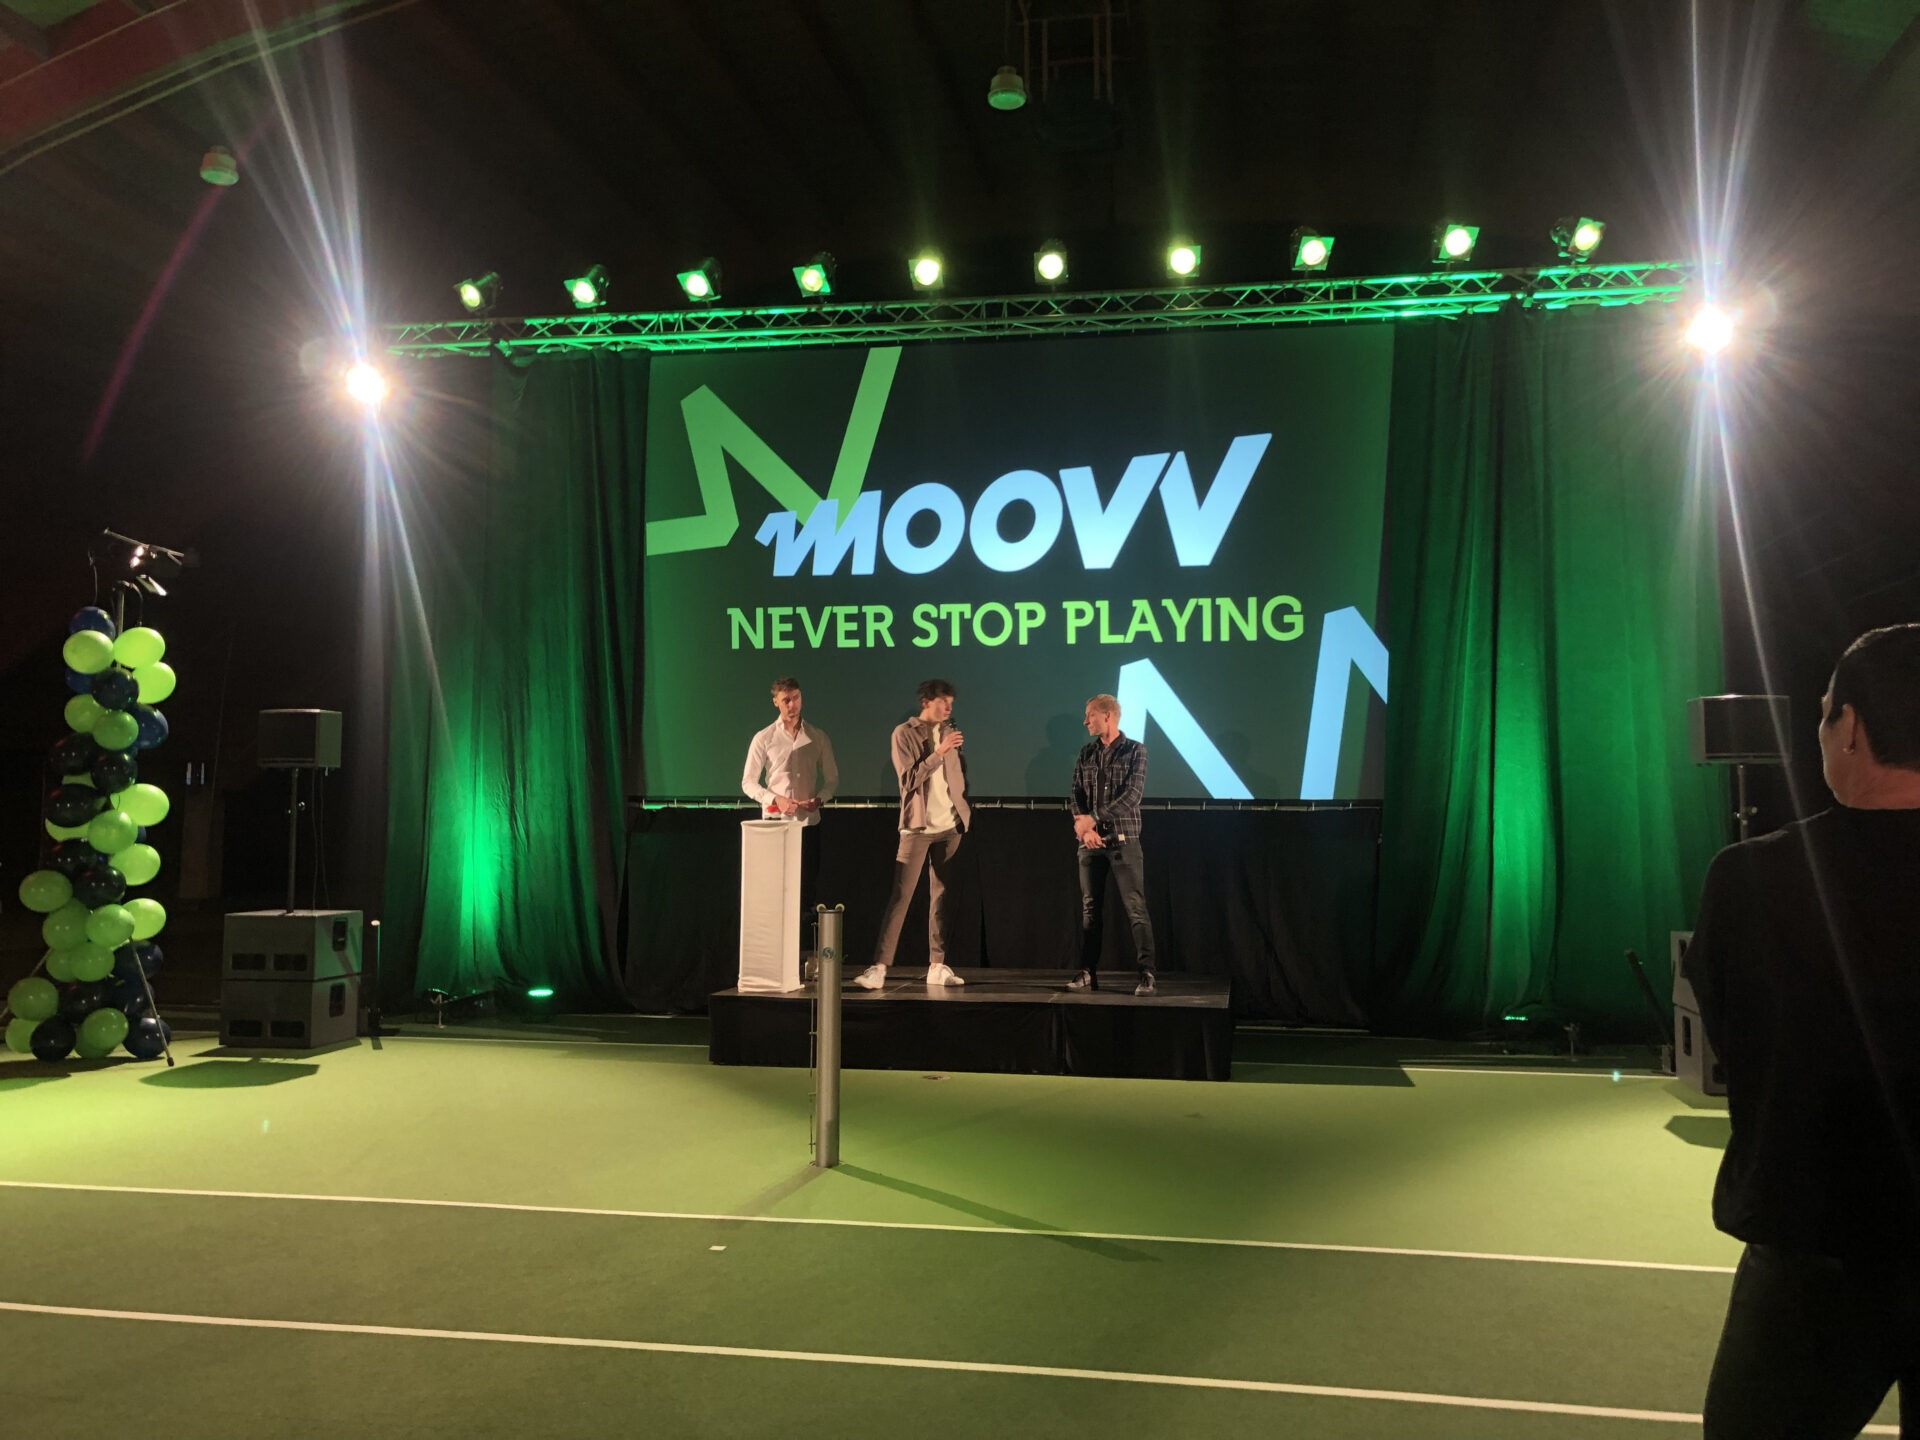 Moovv opening Raalte Padel squash en Tennis. Sterk ontwerpbureau merkidentiteit door jan sterk